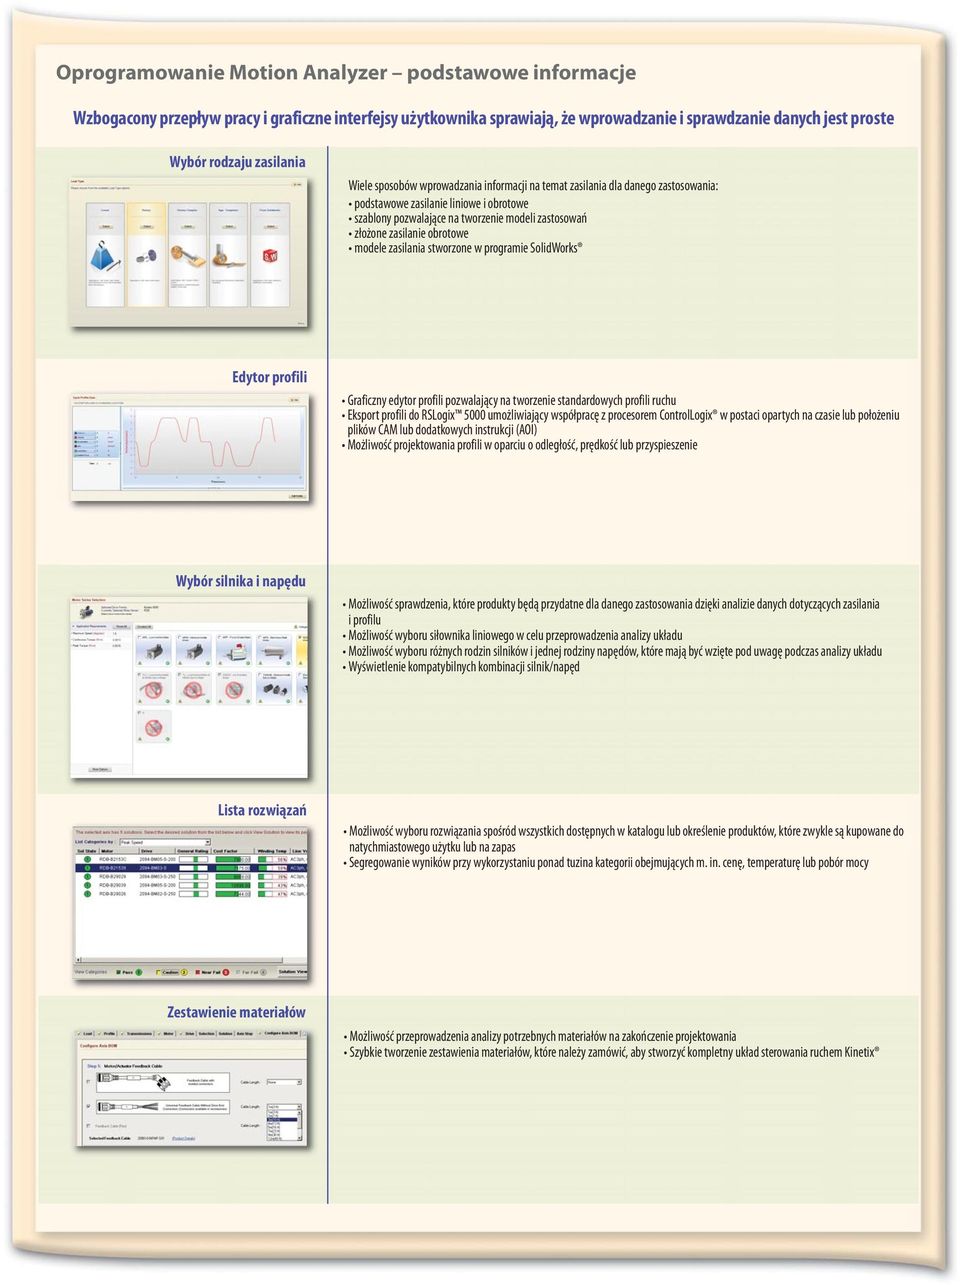 obrotowe modele zasilania stworzone w programie SolidWorks Edytor profili Graficzny edytor profili pozwalający na tworzenie standardowych profili ruchu Eksport profili do RSLogix 5000 umożliwiający